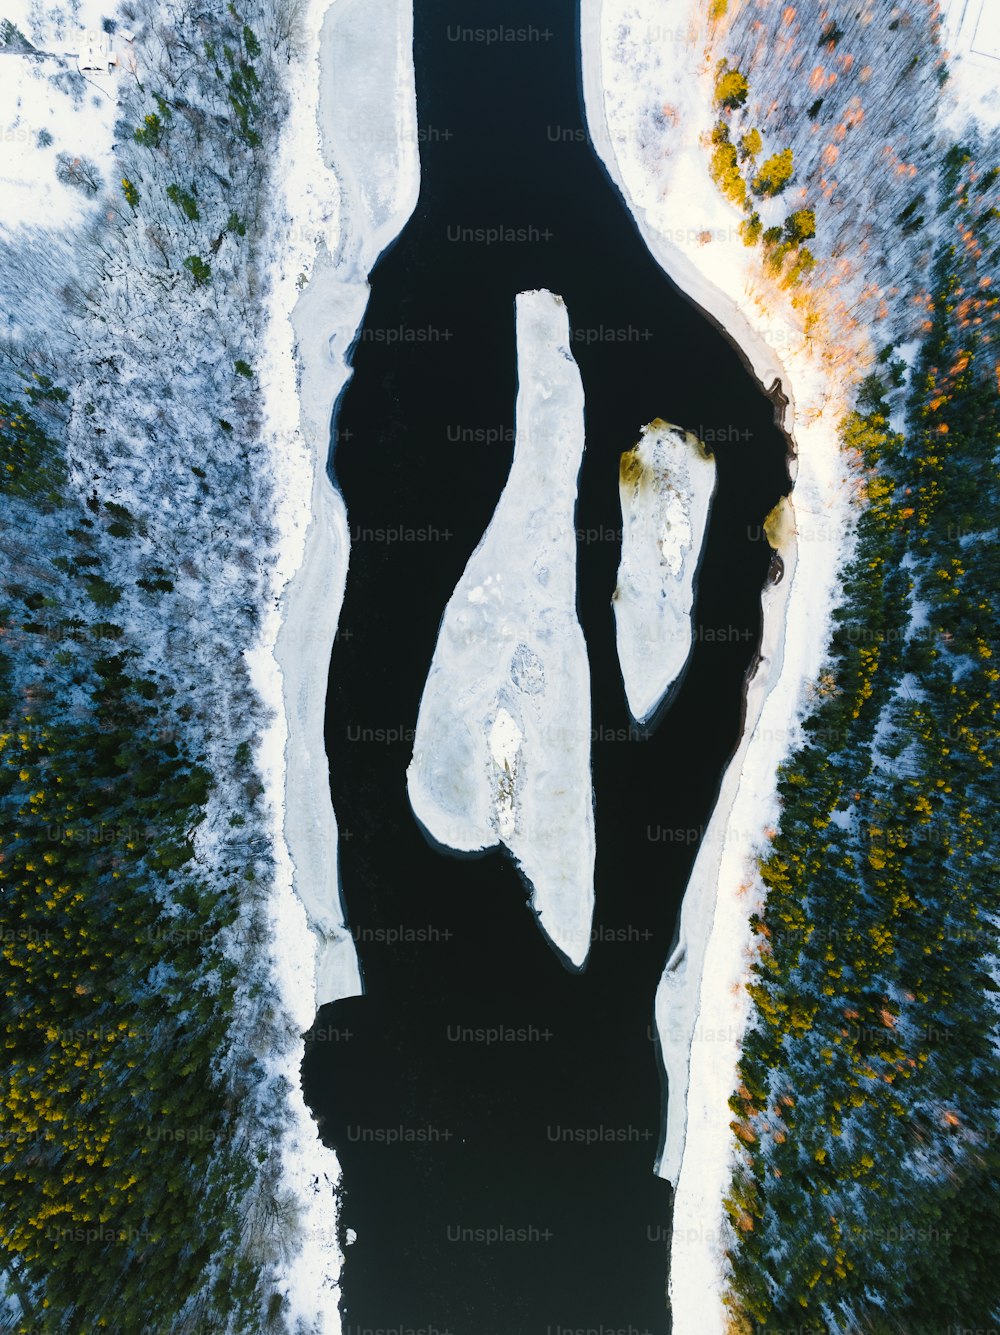 uma vista aérea de um corpo de água cercado por neve